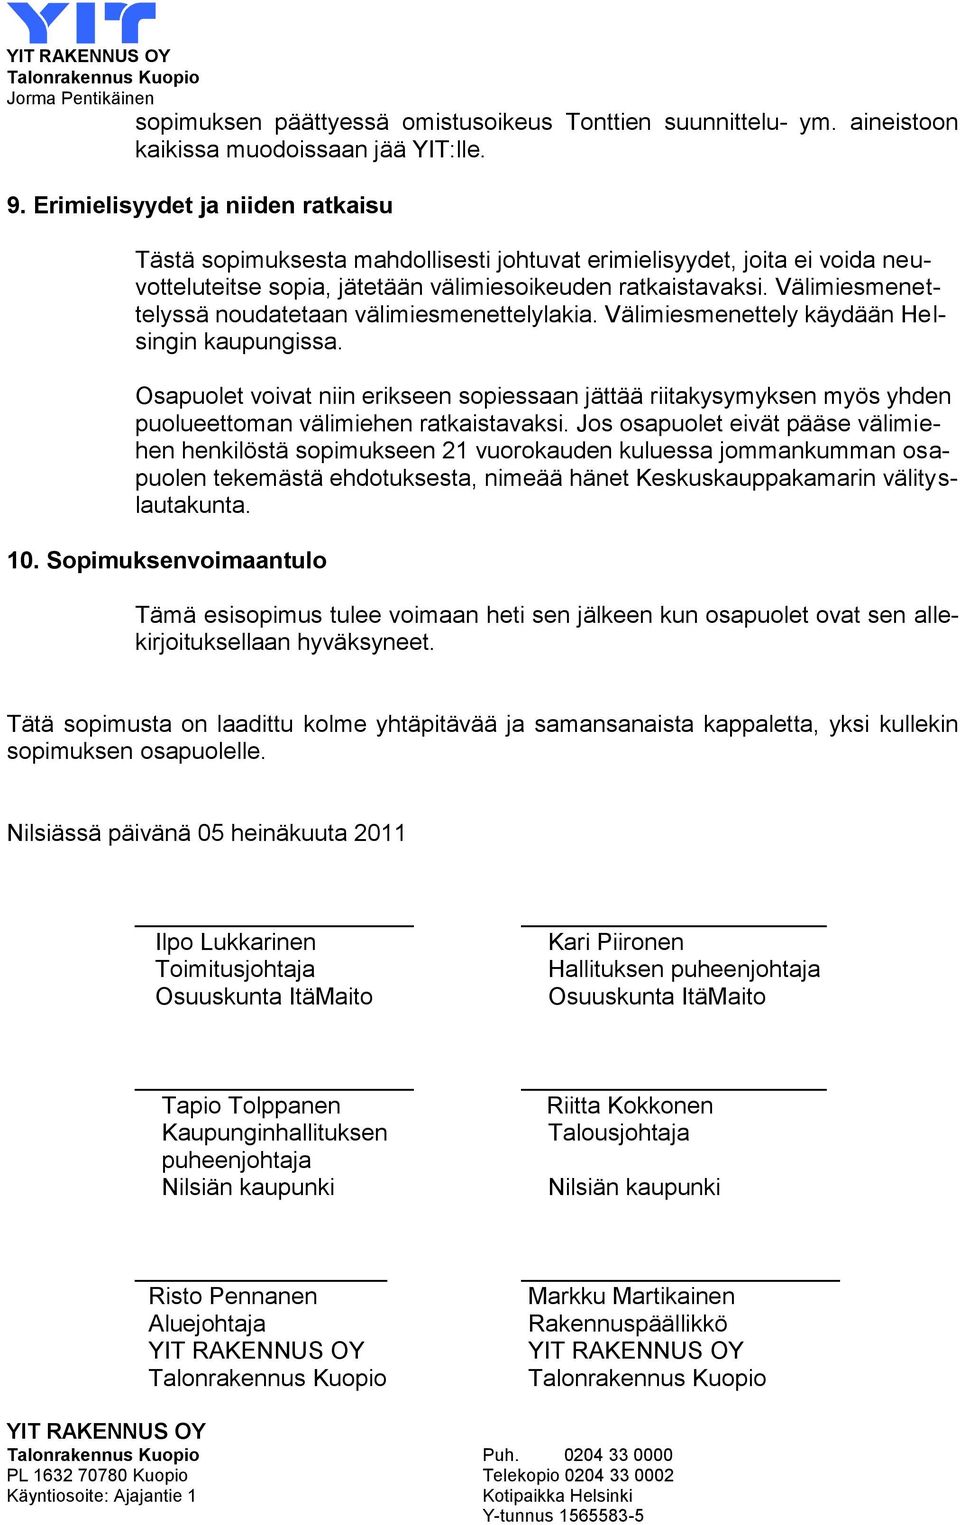 Välimiesmenettelyssä noudatetaan välimiesmenettelylakia. Välimiesmenettely käydään Helsingin kaupungissa.